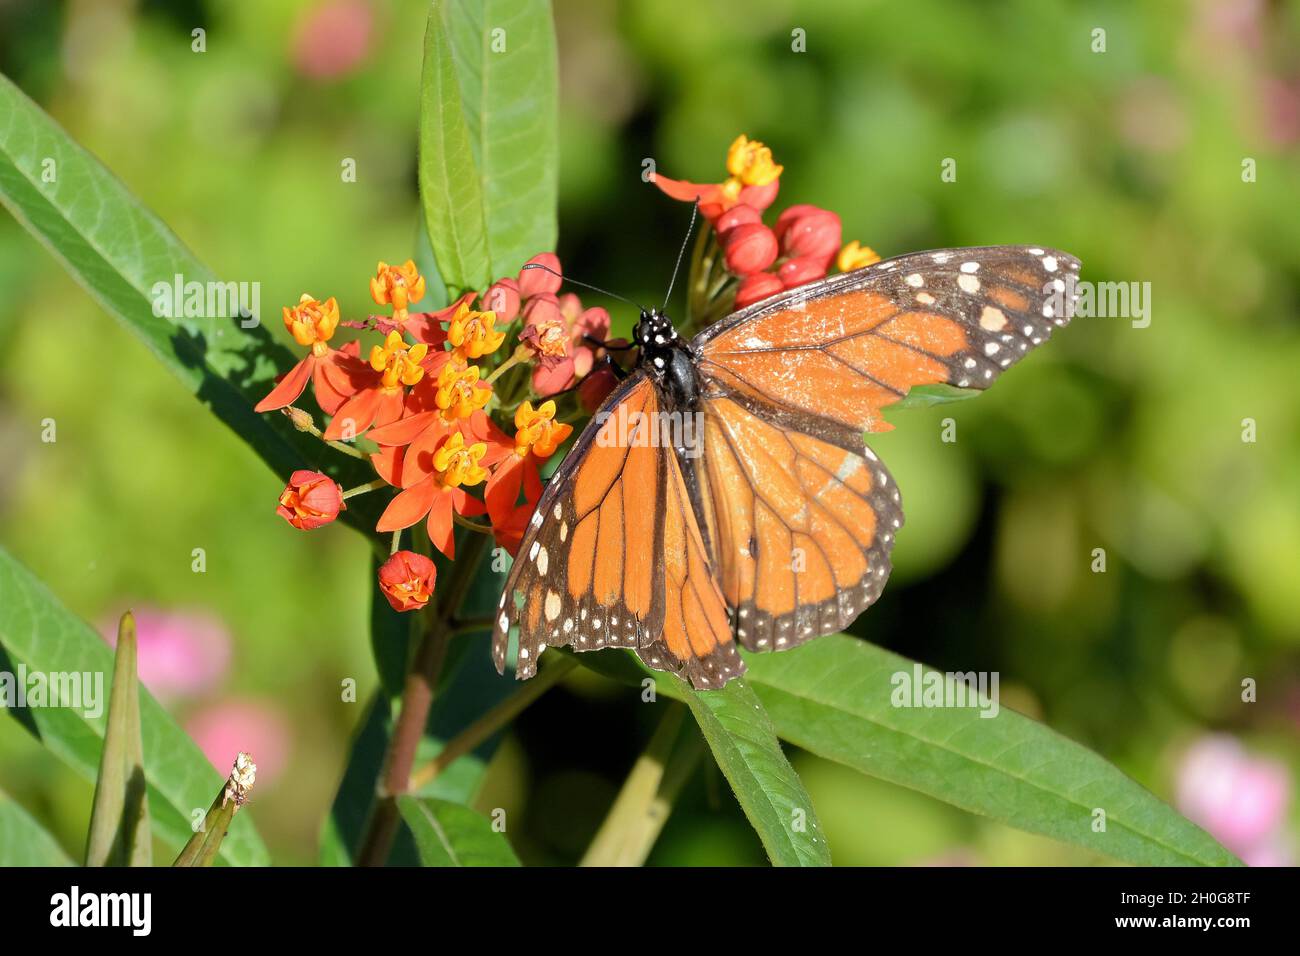 Ein Monarch Butterfly (Danaus plexippus) mit zarten Terrakotta-orangefarbenen Flügeln, die sich auf winzigen Blumen vor grünem Hintergrund ausbreiten Stockfoto